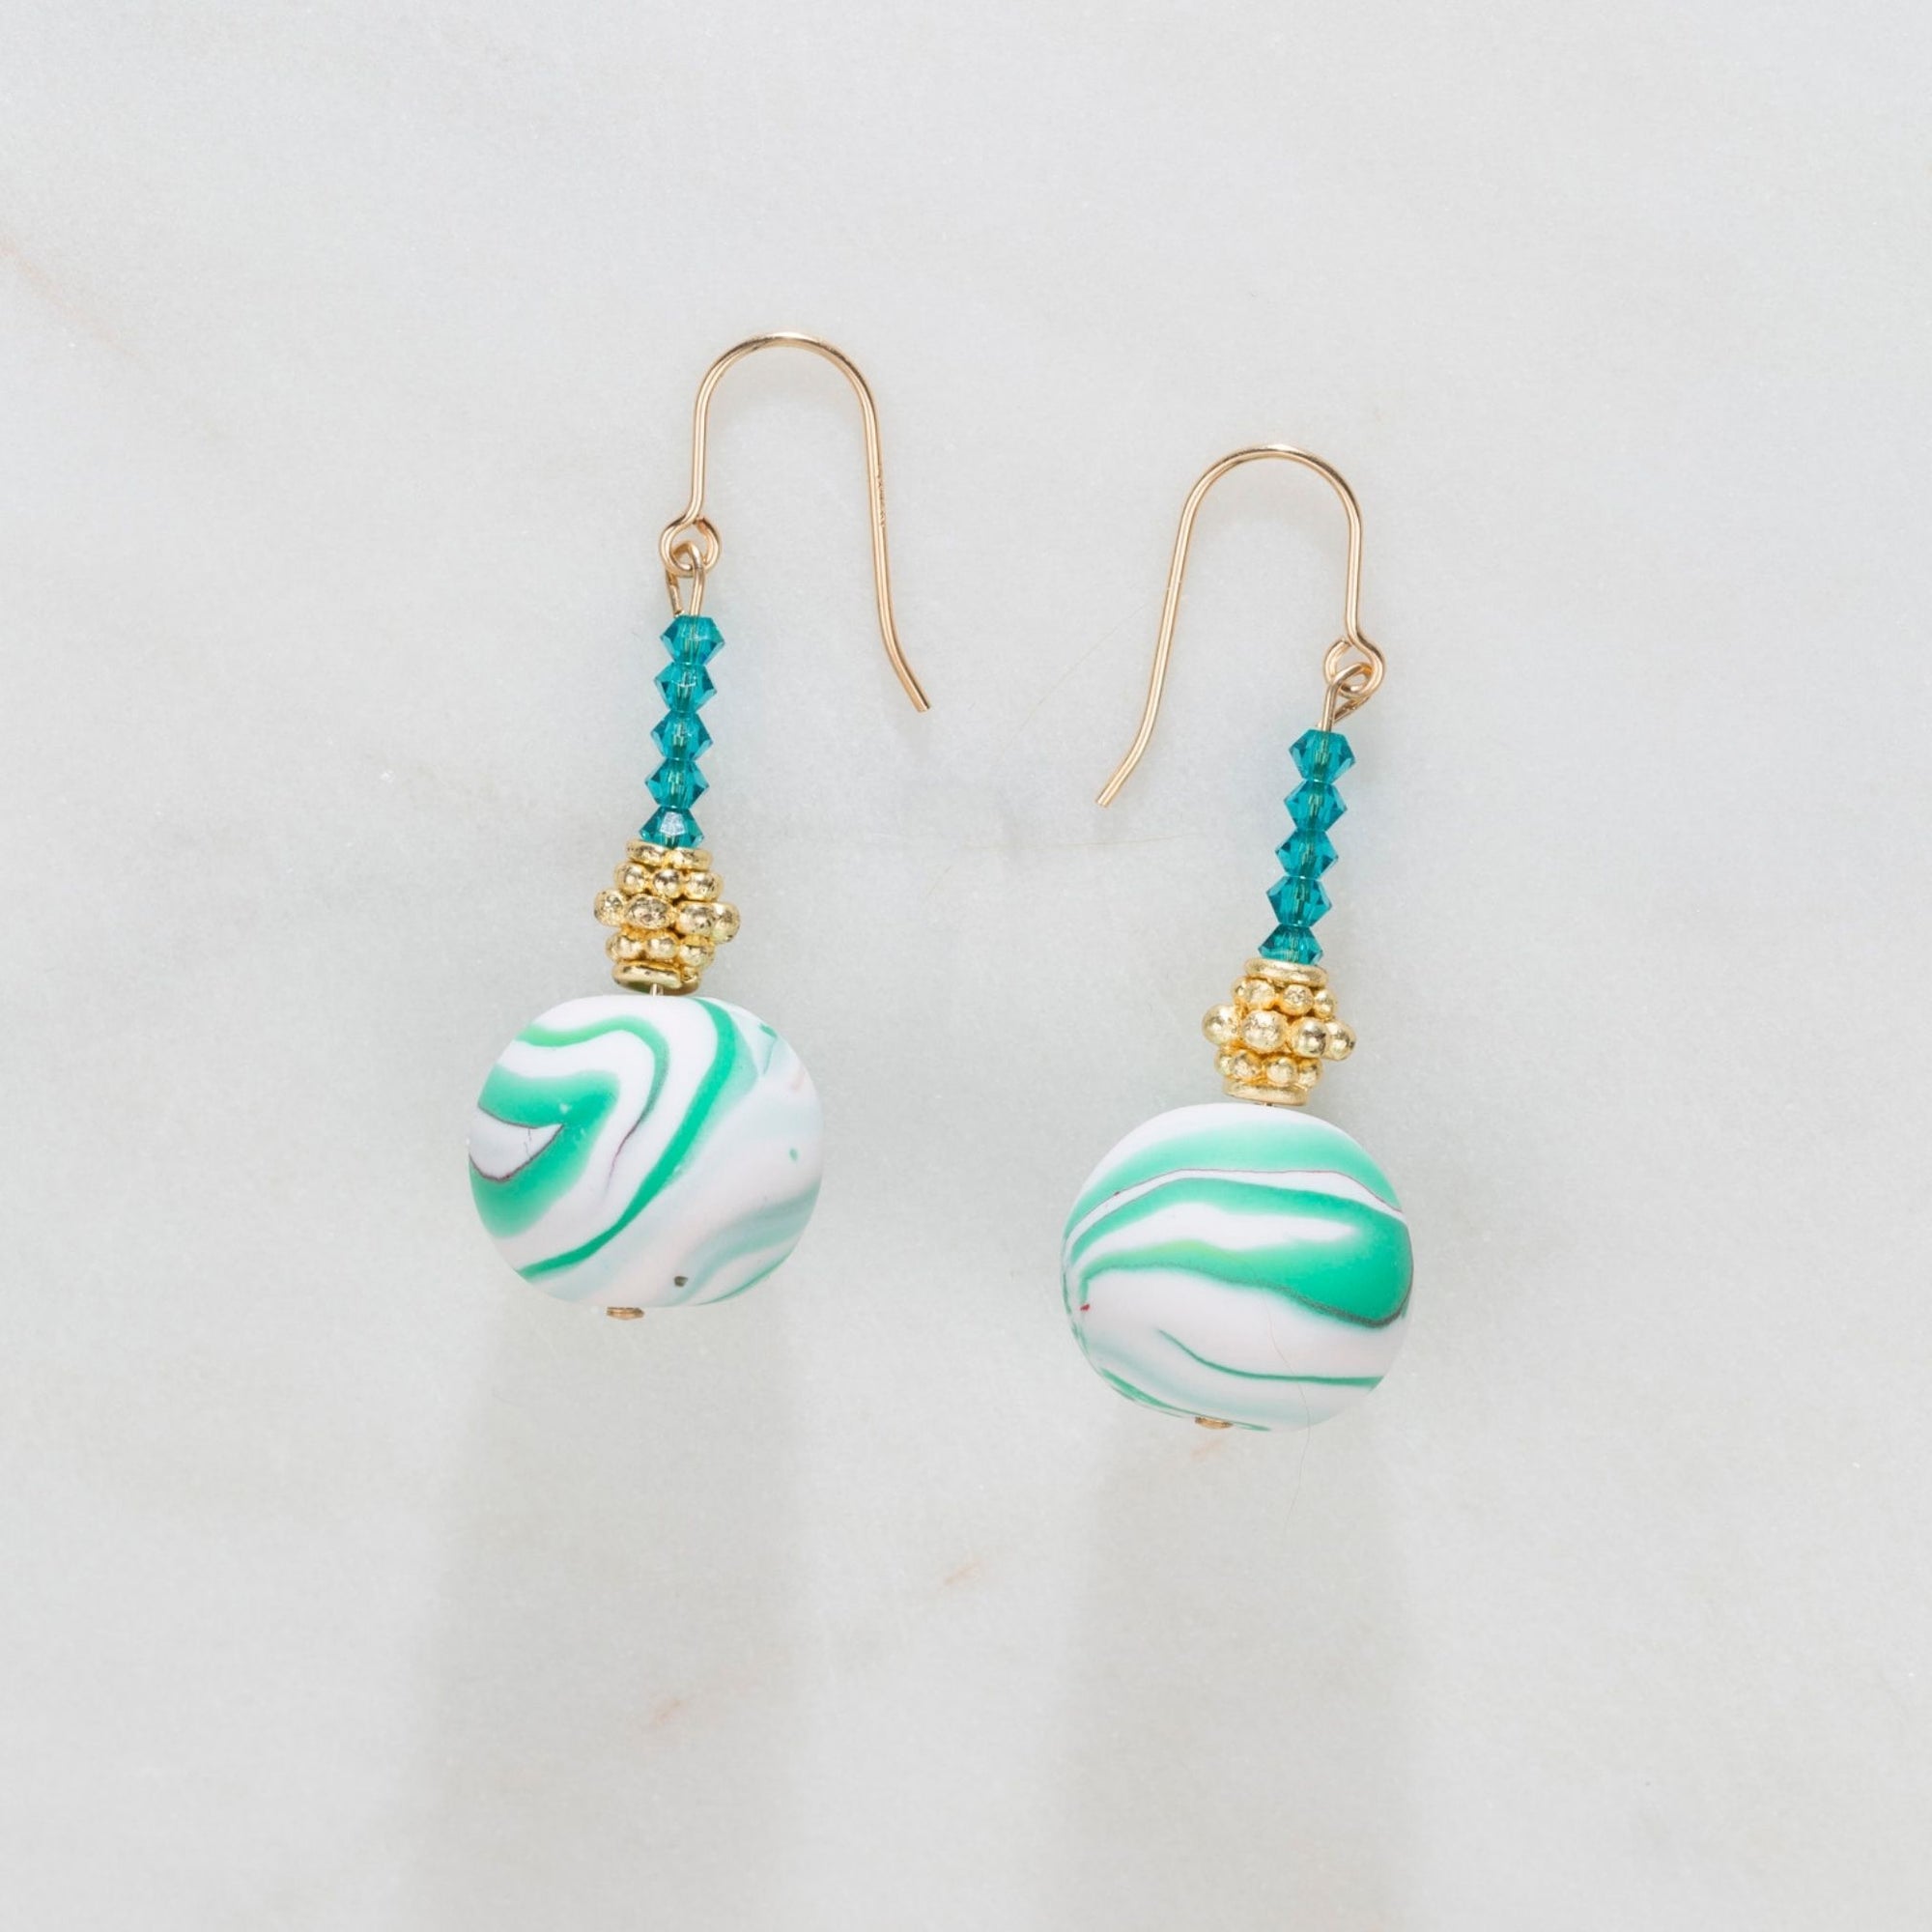 Handmade Earrings | Handmade Beads| Swarovski Crystals| 14kt Gold filled hoops | ER105